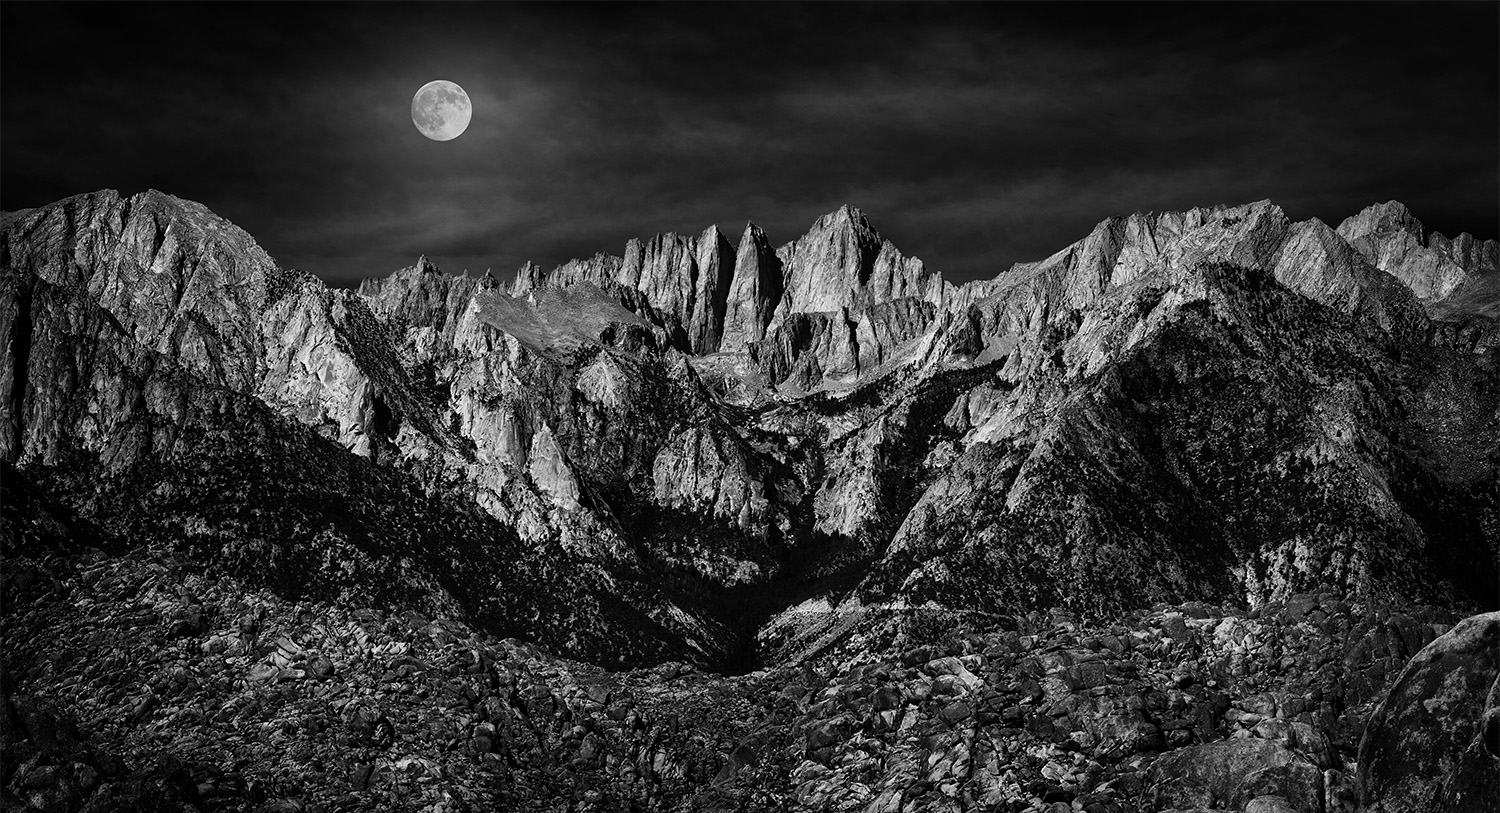 CF103742_b&w_V3_Moon over Sierras.jpg